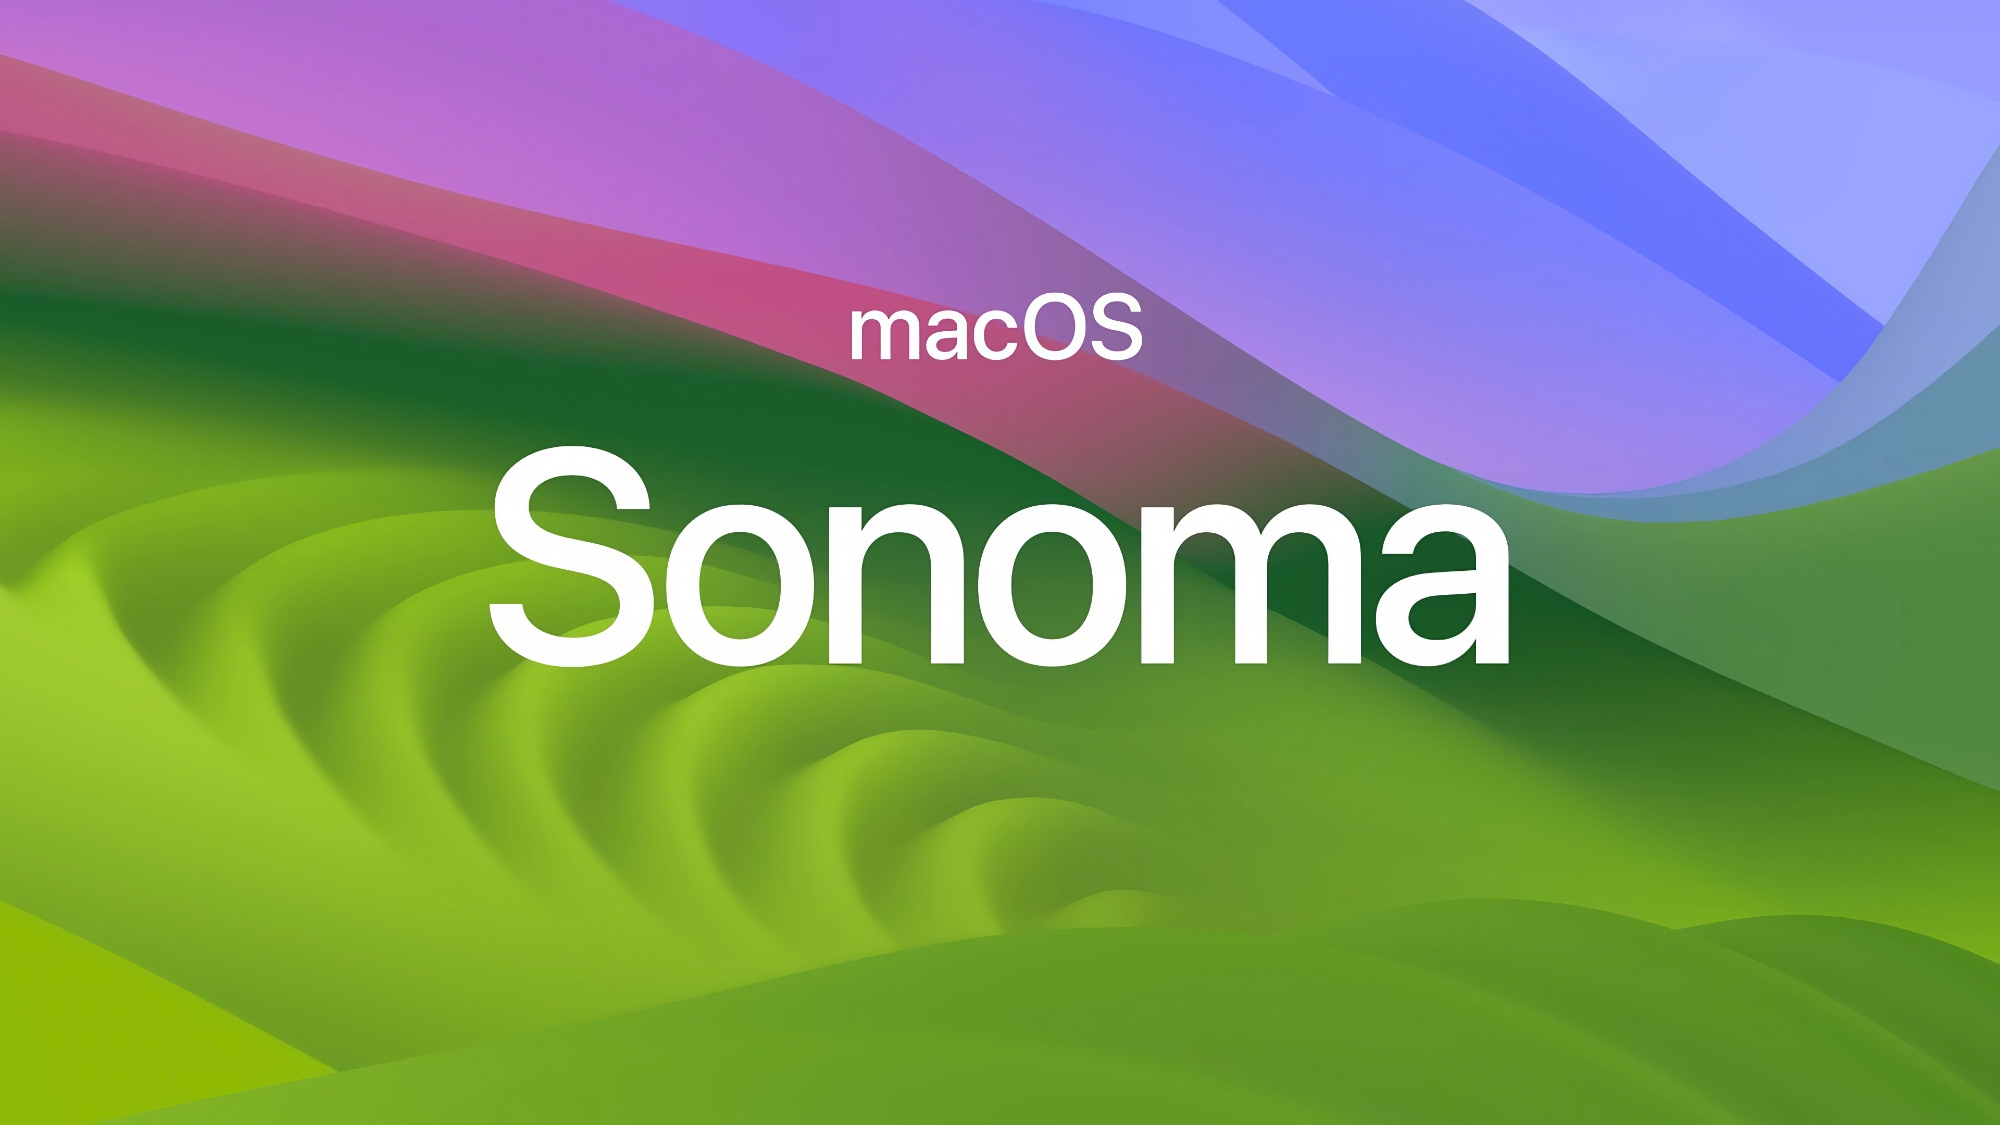 Corrección de errores: Apple ha lanzado macOS Sonoma 14.3.1